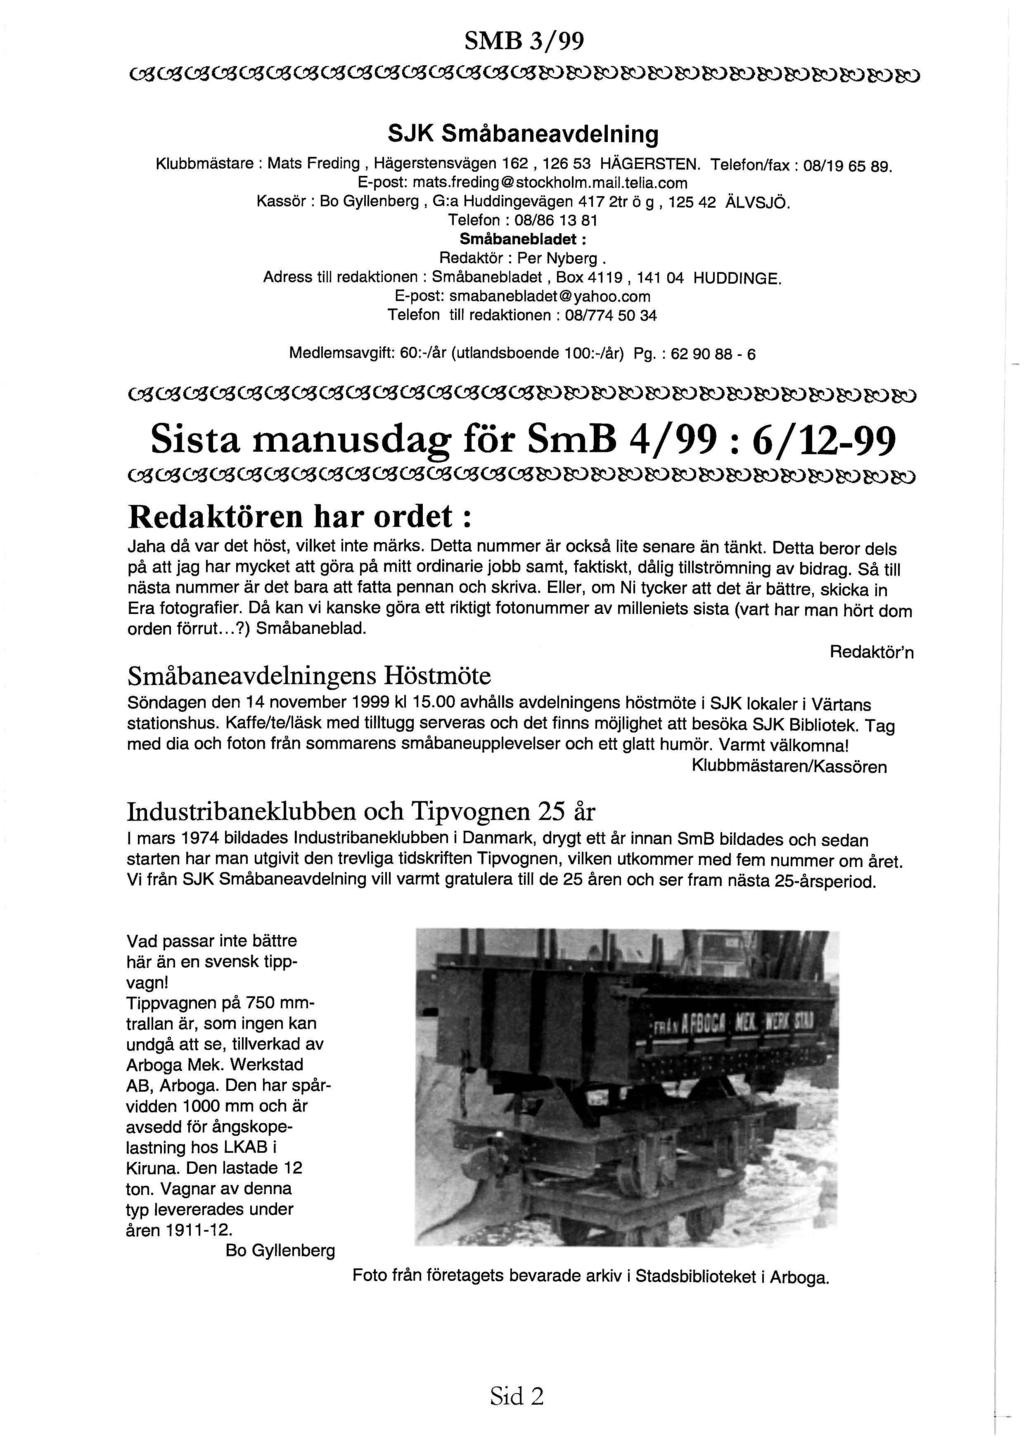 ~~~~~~~~~~~~~~~rororororororororororo~roro SJK Småbaneavdelning Klubbmästare : Mats Freding, Hägerstensvägen 162, 126 53 HÄGERSTEN. Telefon/fax : 08/19 65 89. E-post: mats.freding@ stockholm.mail.